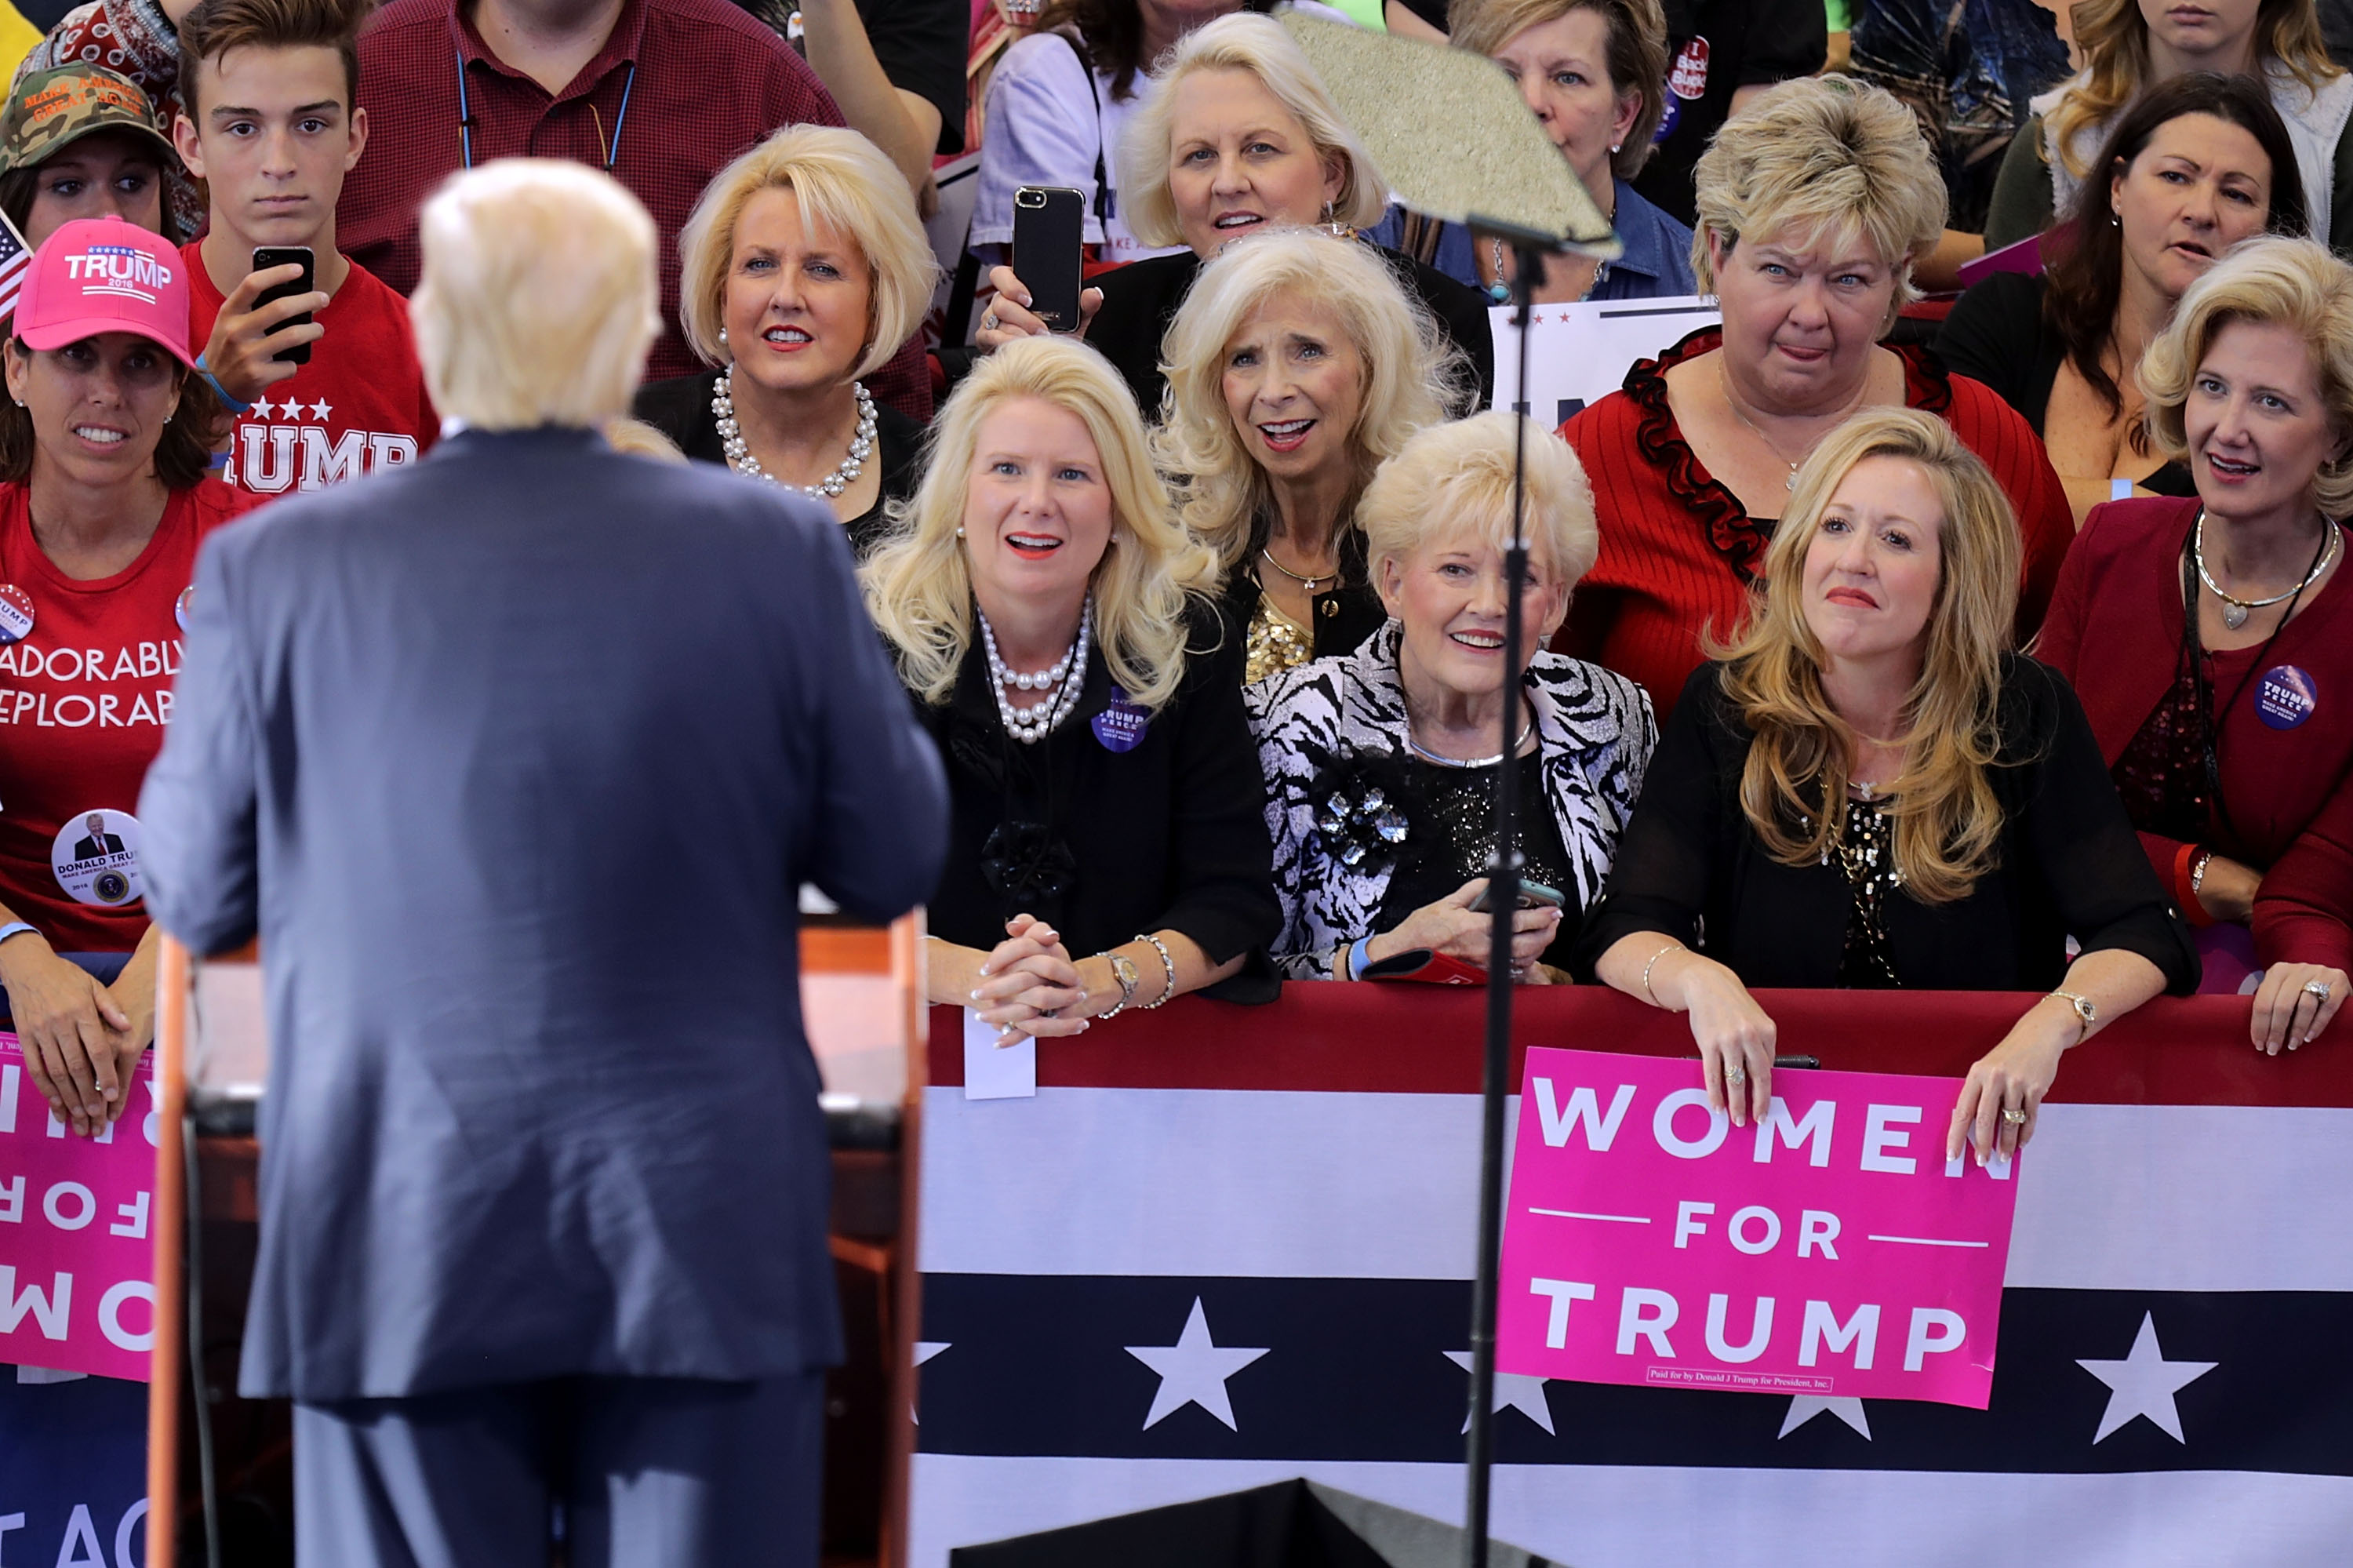 Women for Trump 2016 campaign